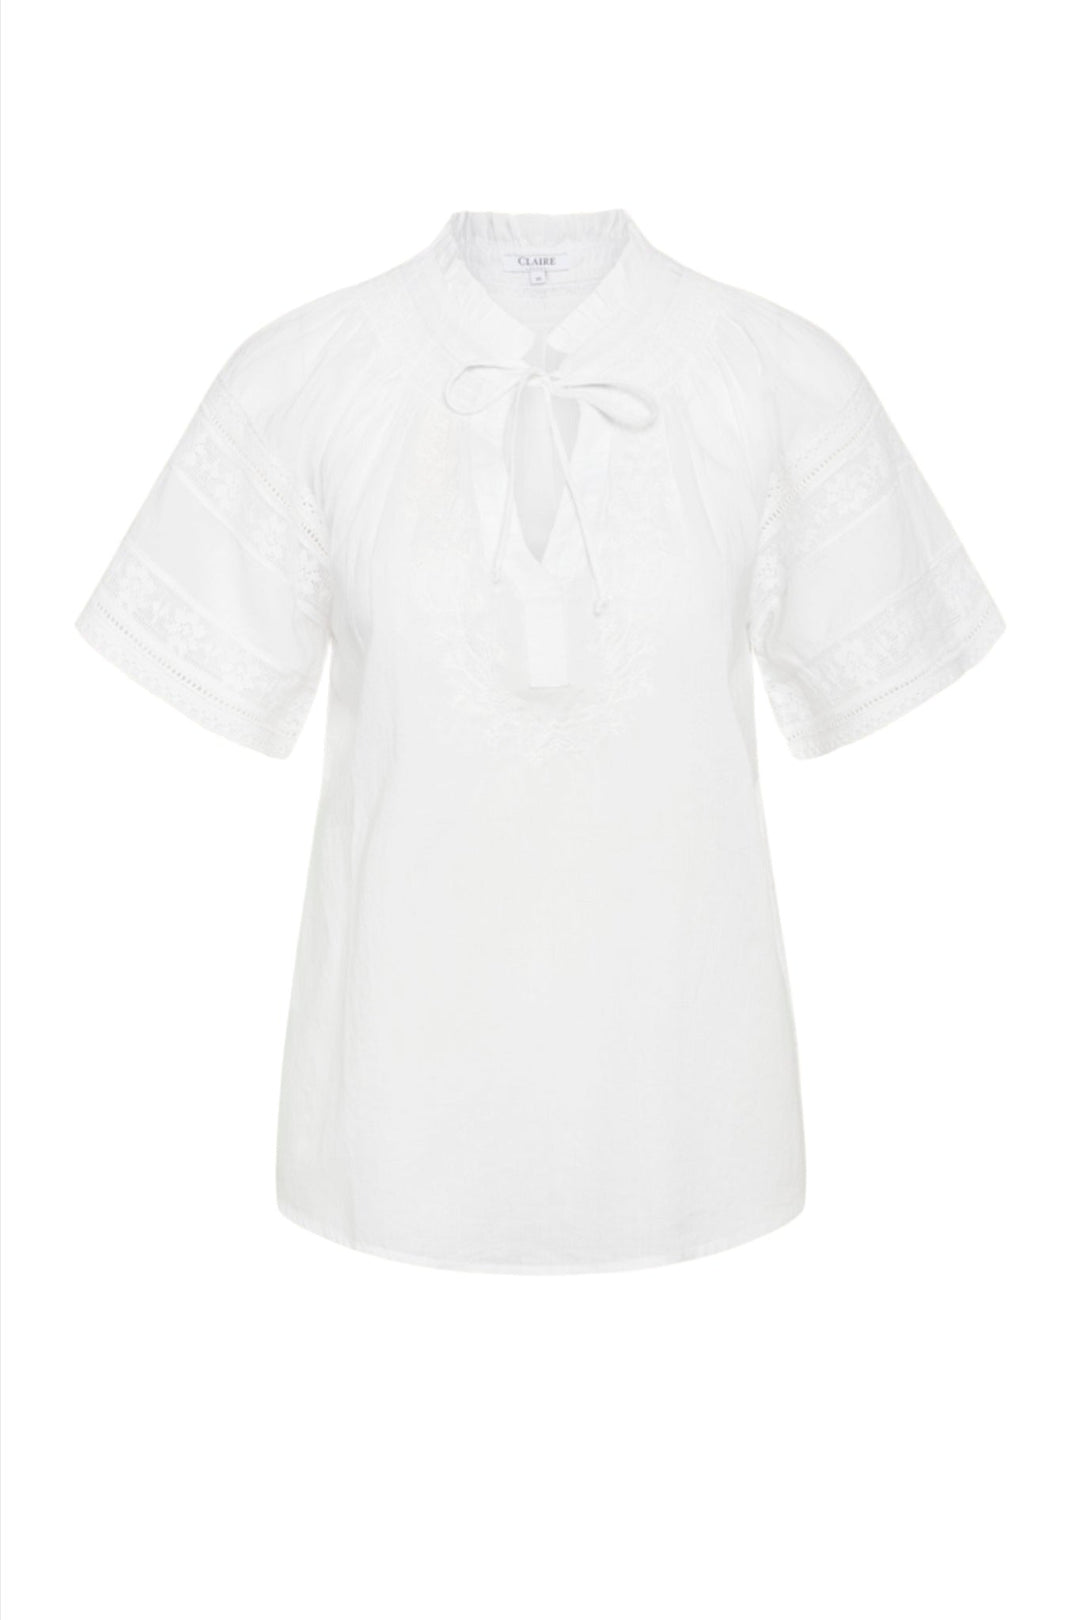 Cwriika - Shirt White | Skjorter og bluser | Smuk - Dameklær på nett